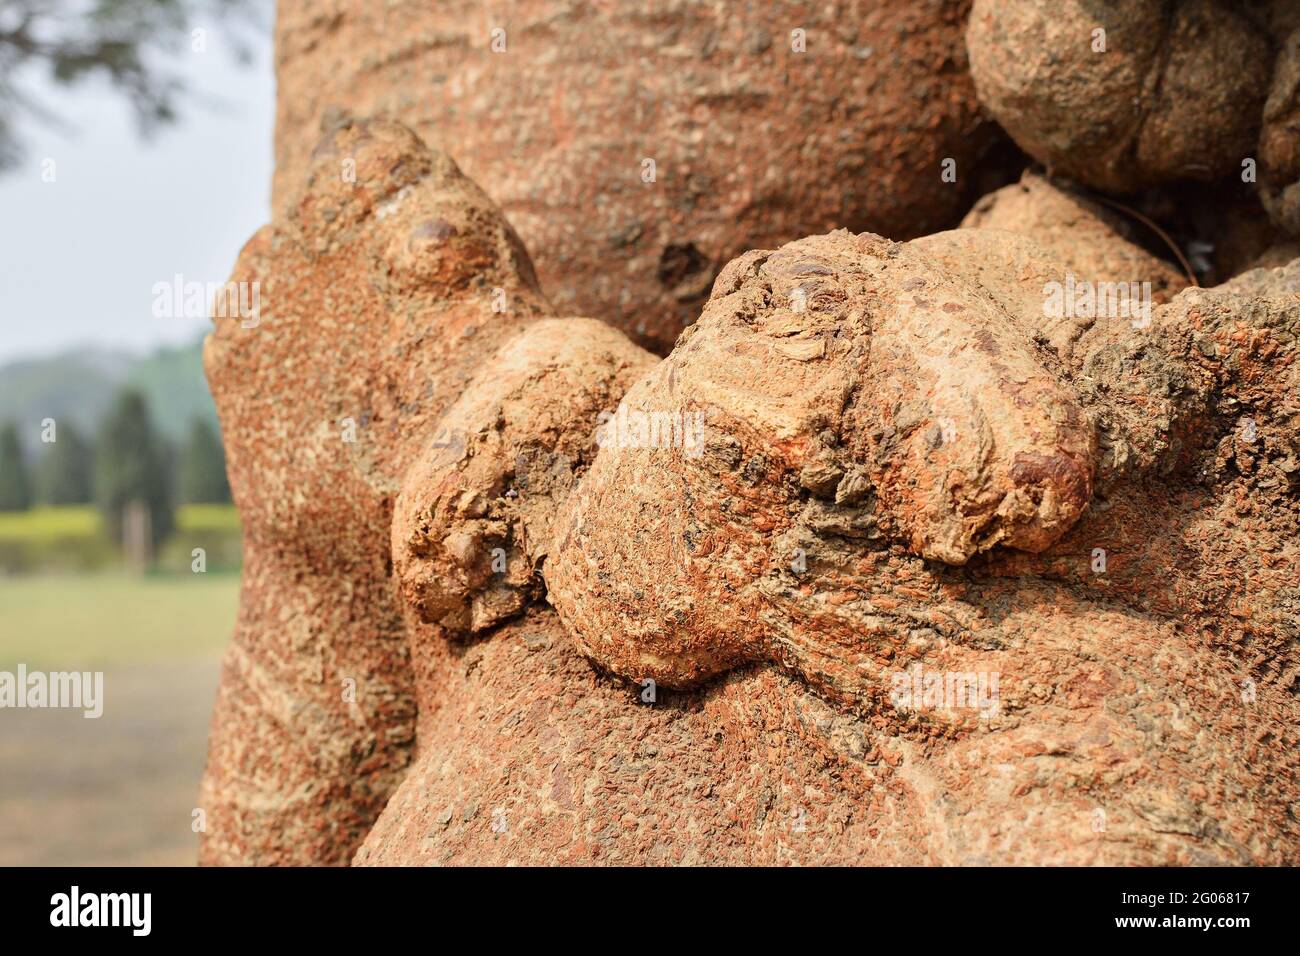 Immagine concettuale astratta naturale del bacio, dell'amore, formato dalla forma della radice dell'albero. Immagine stock natura di forme astratte di legno, Bengala Occidentale, India Foto Stock